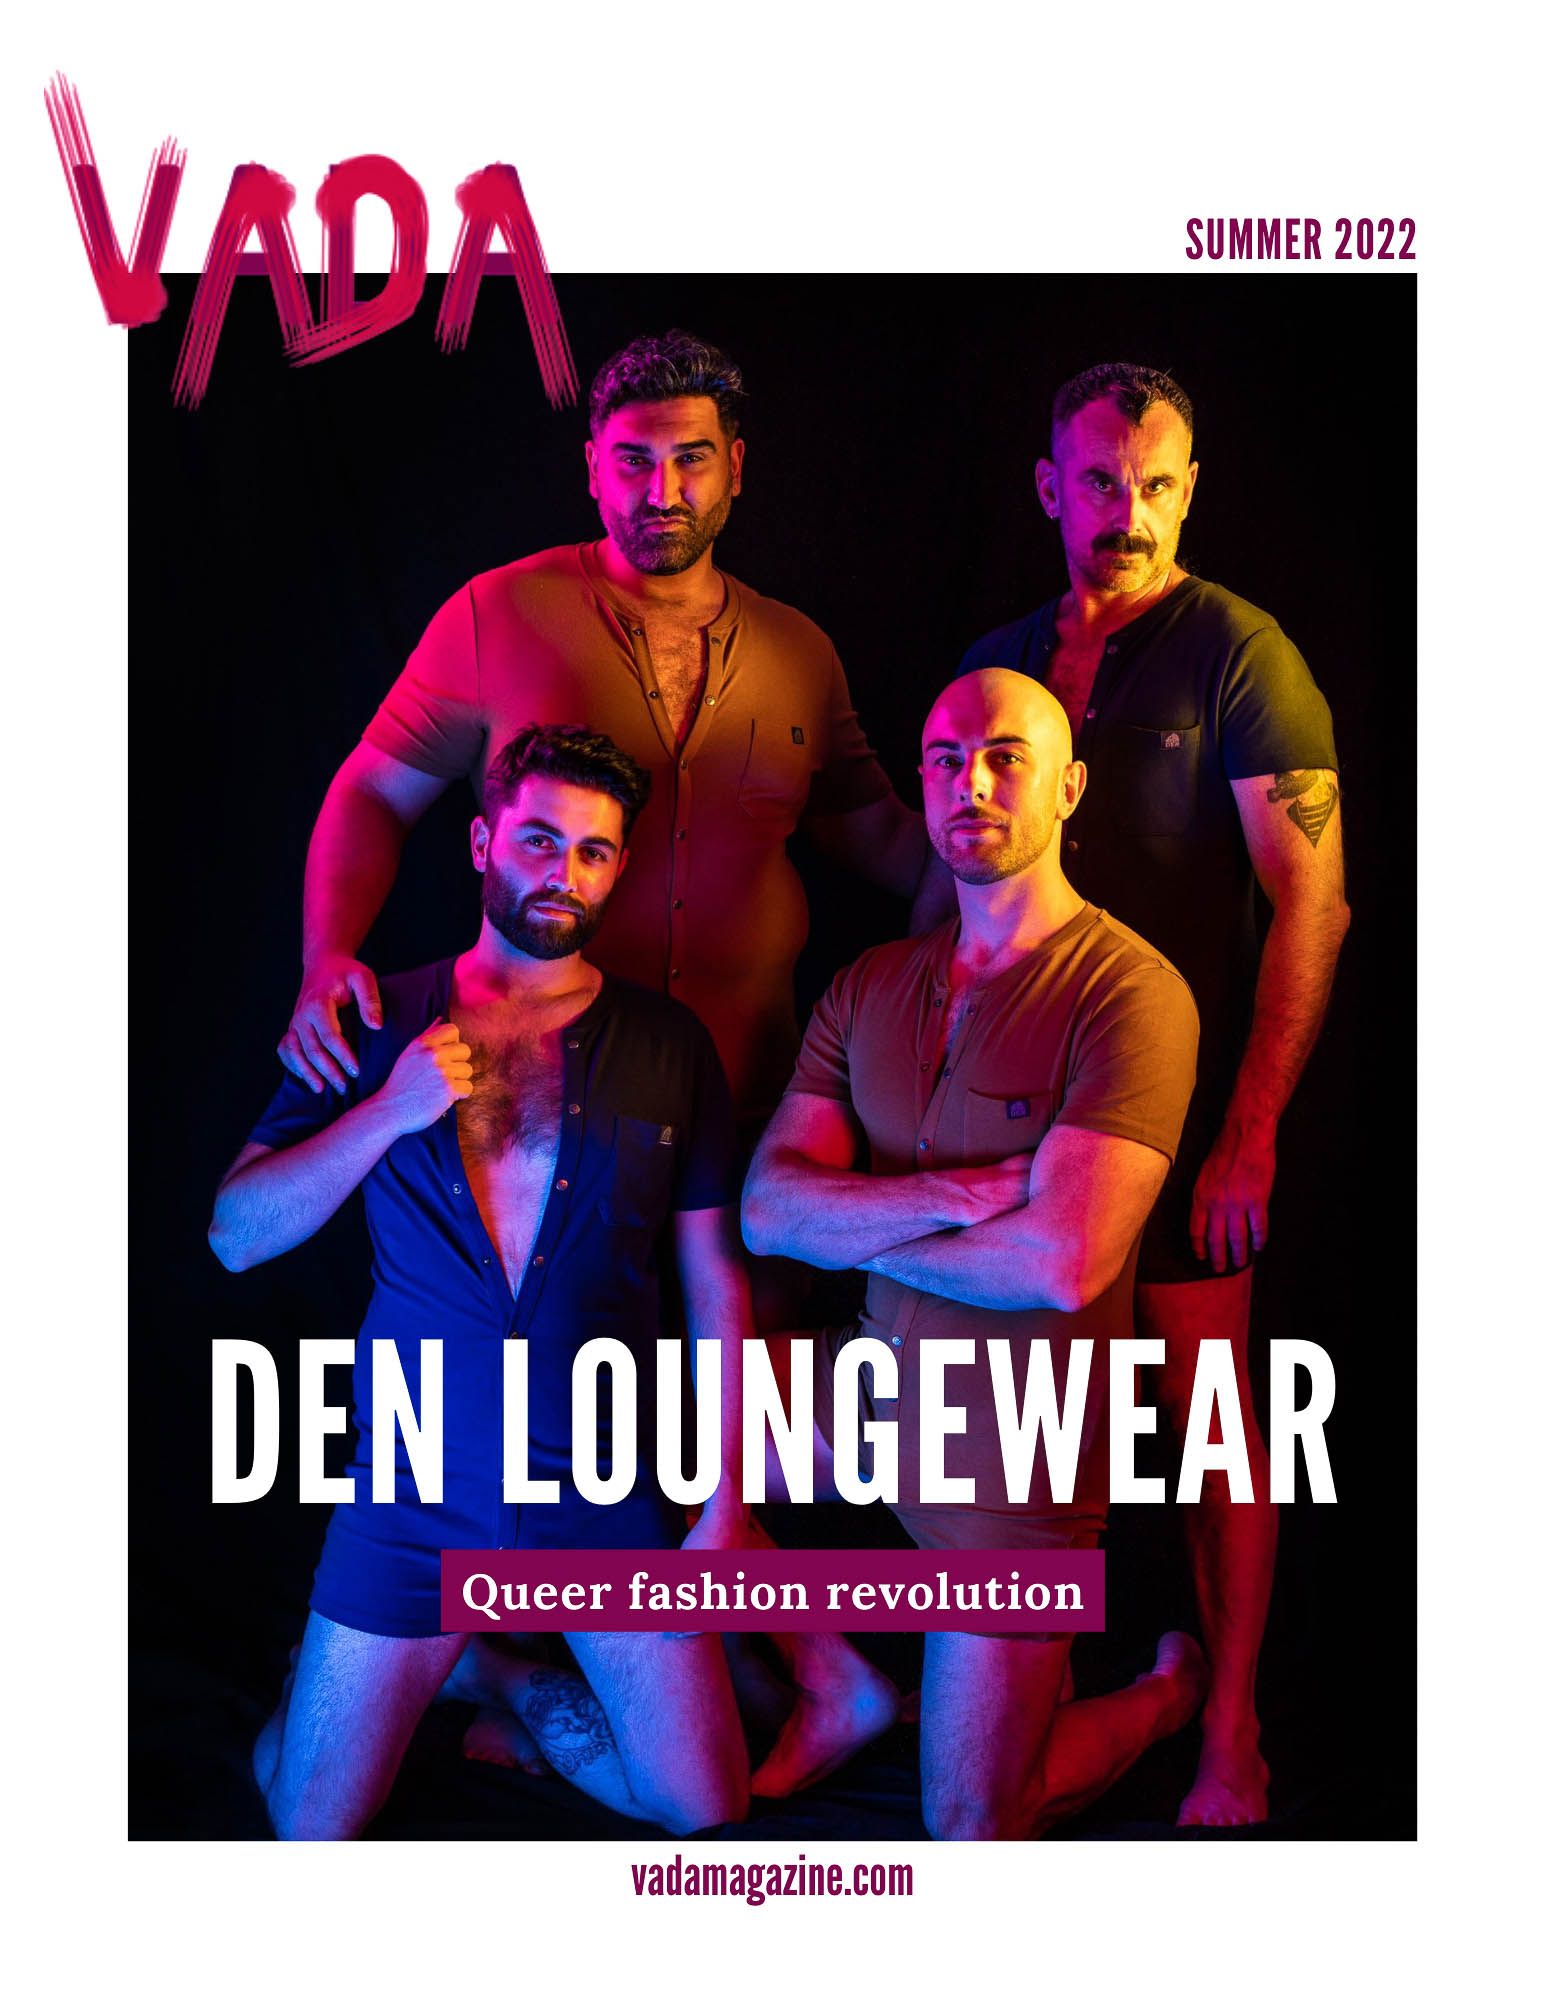 DEN Loungewear VADA cover